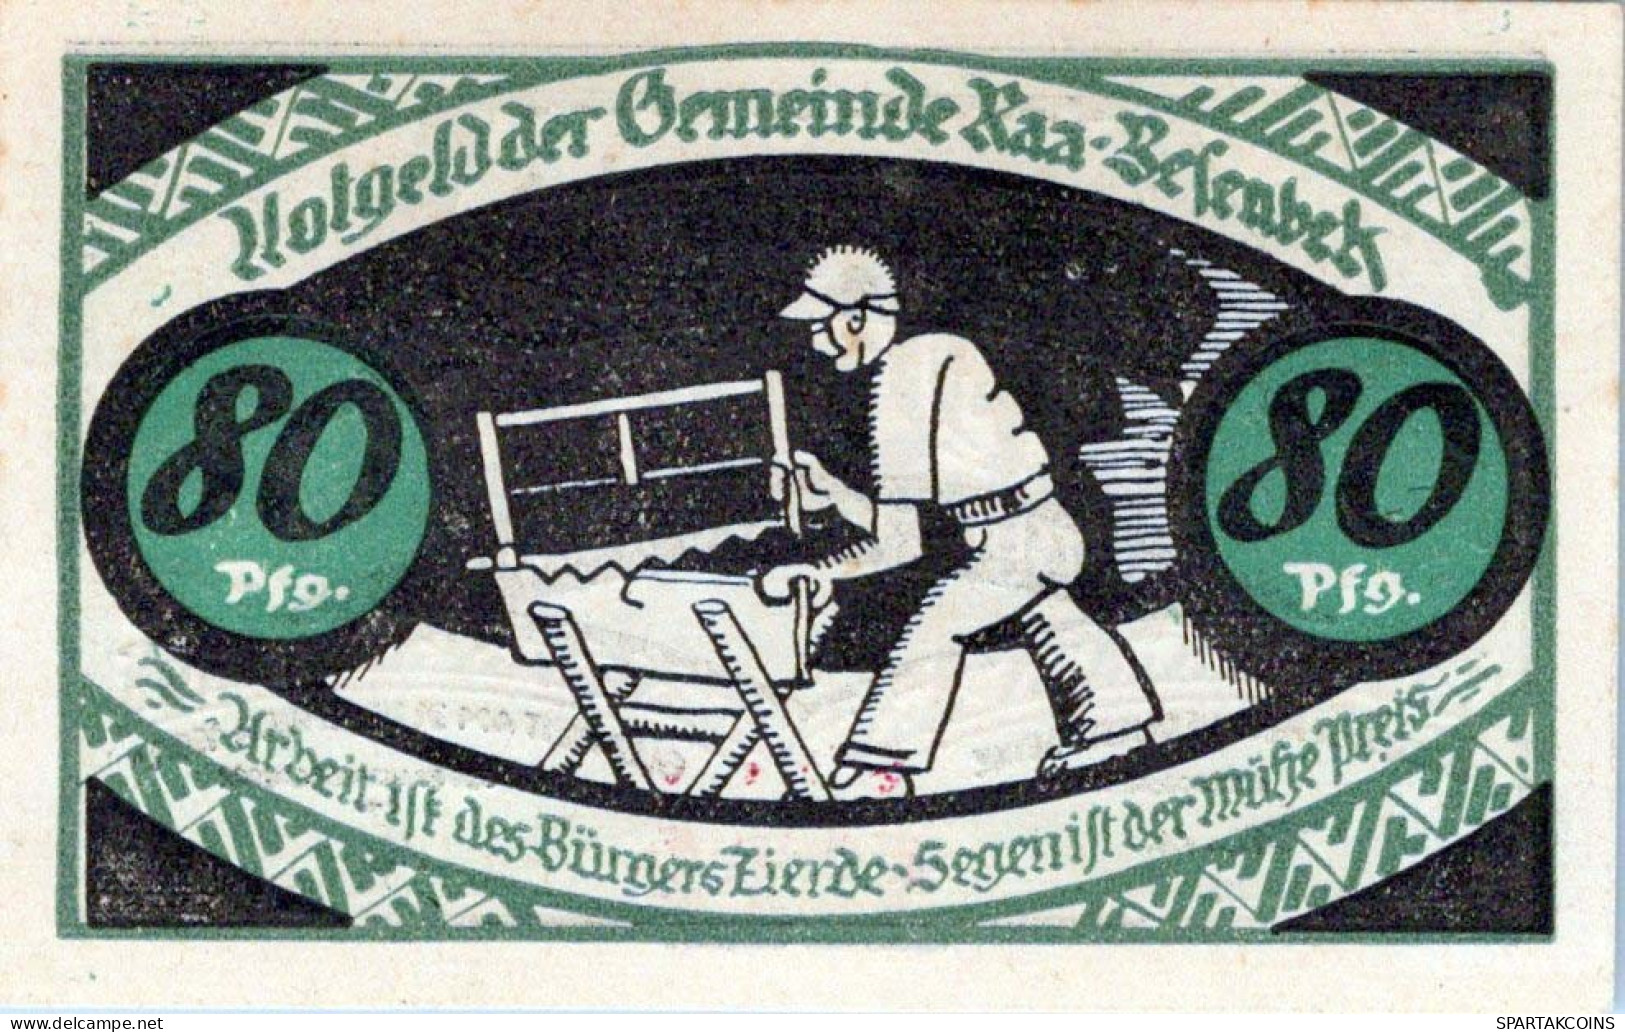 80 PFENNIG 1921 Stadt Kurzenmoor DEUTSCHLAND Notgeld Papiergeld Banknote #PG098 - [11] Local Banknote Issues